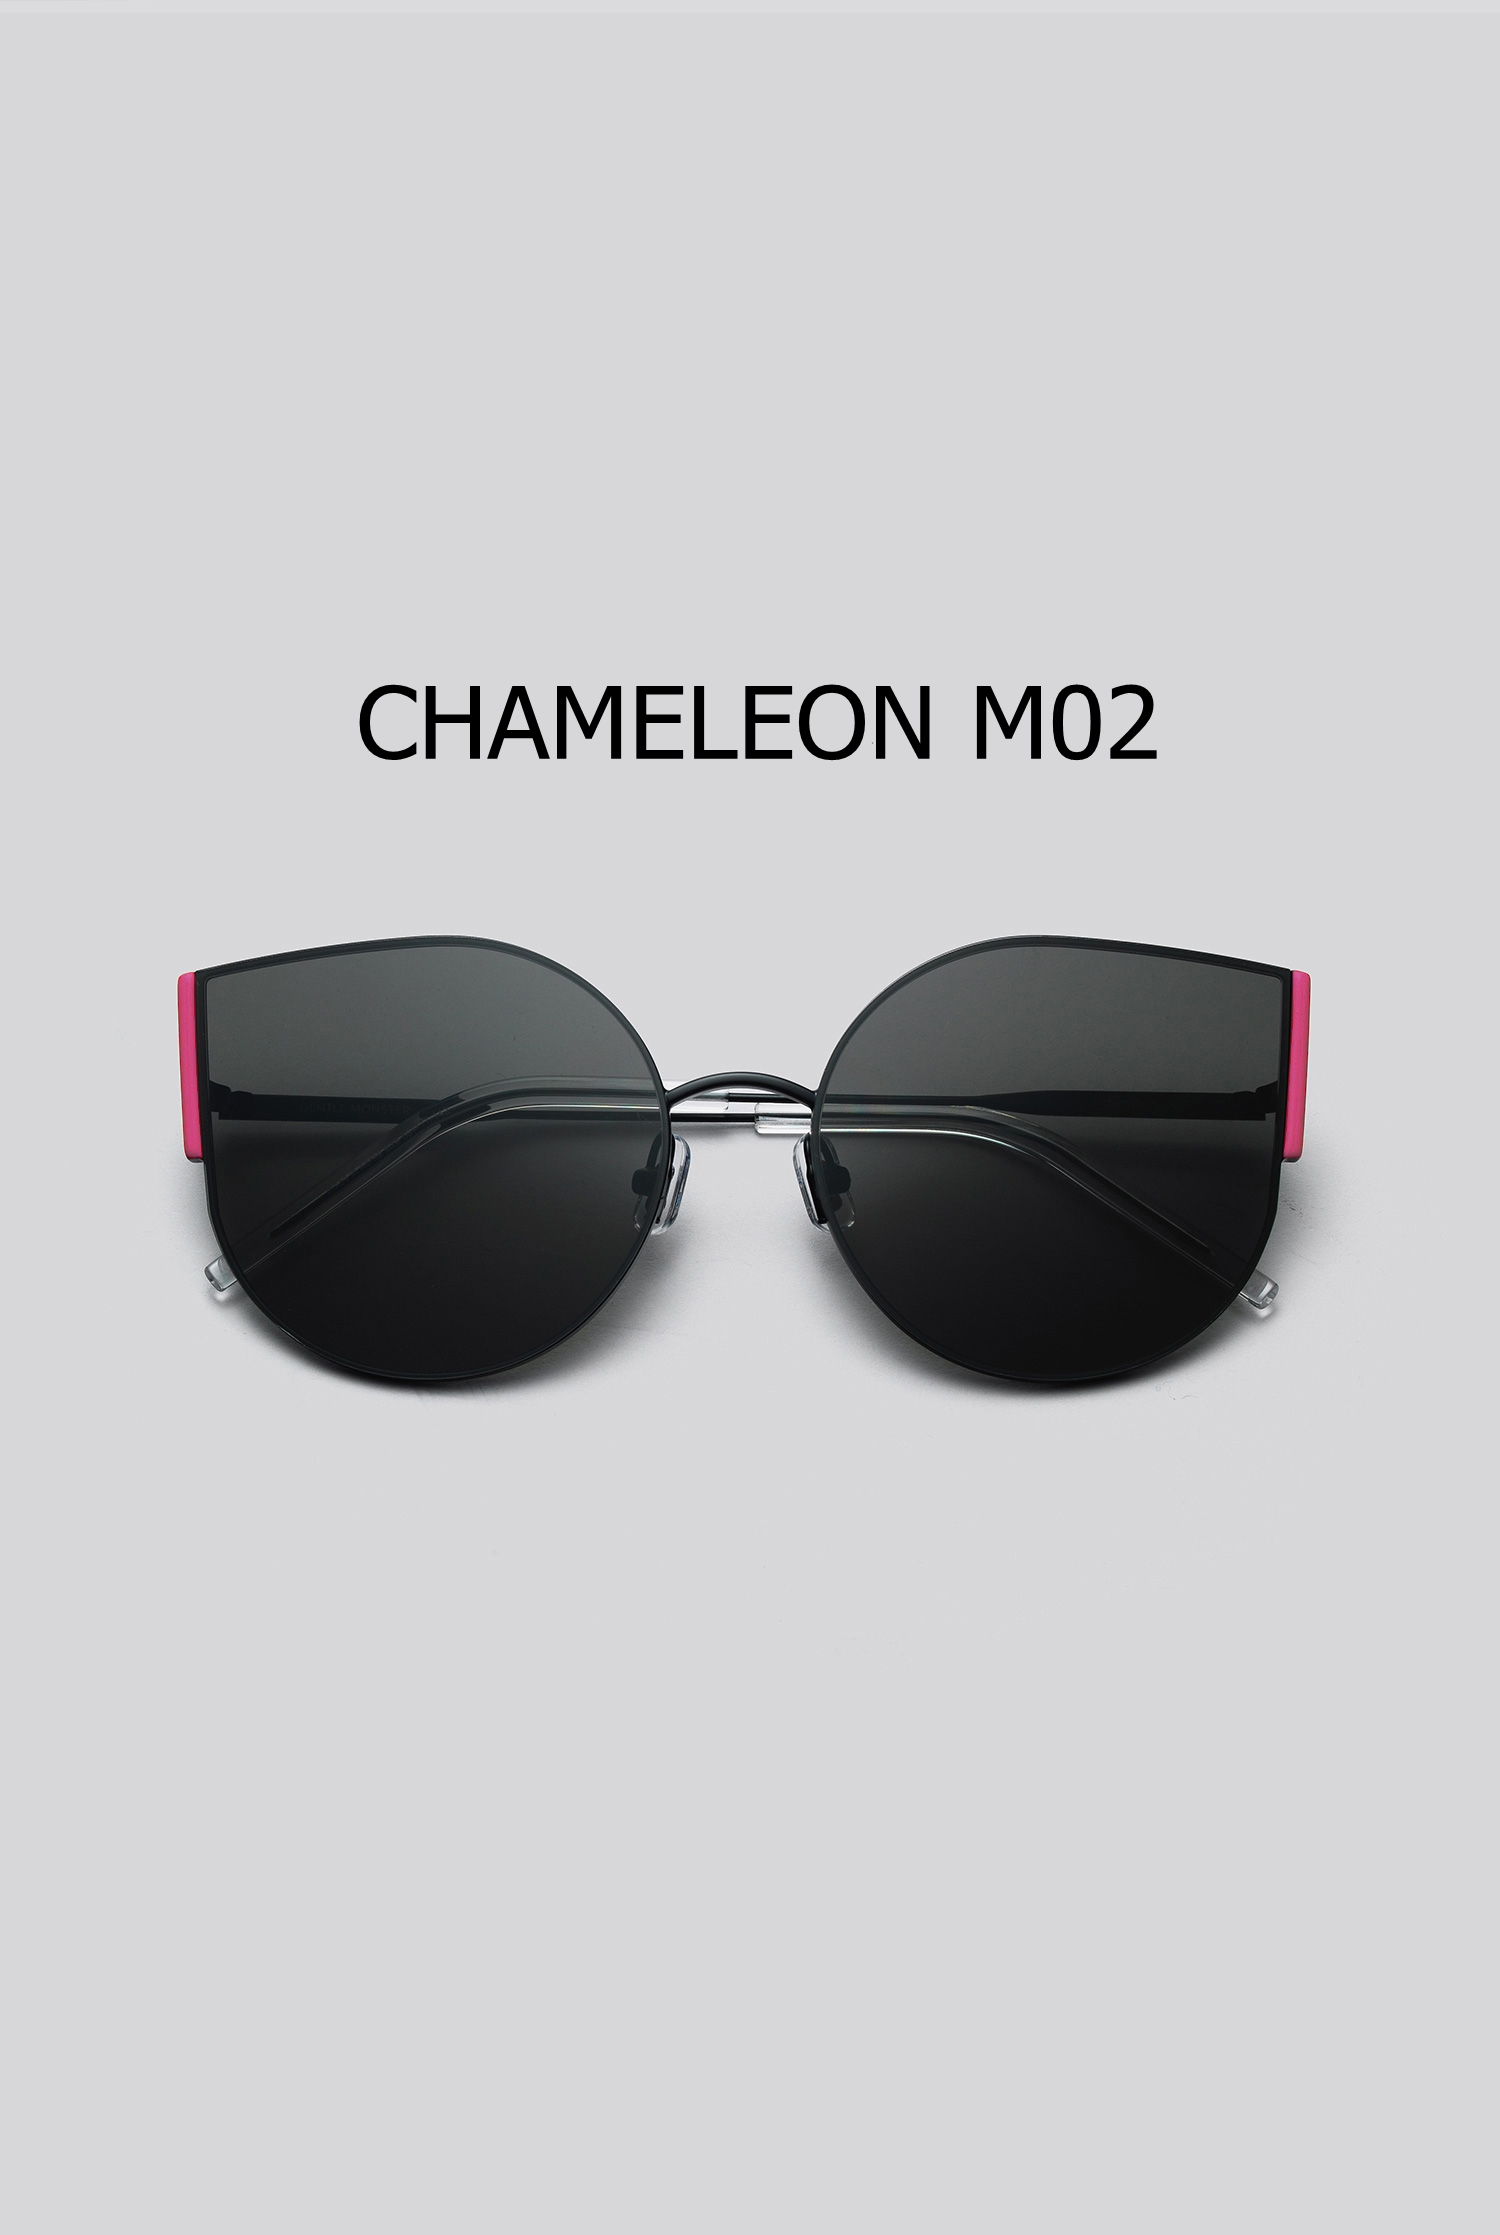 CHAMELEON M02